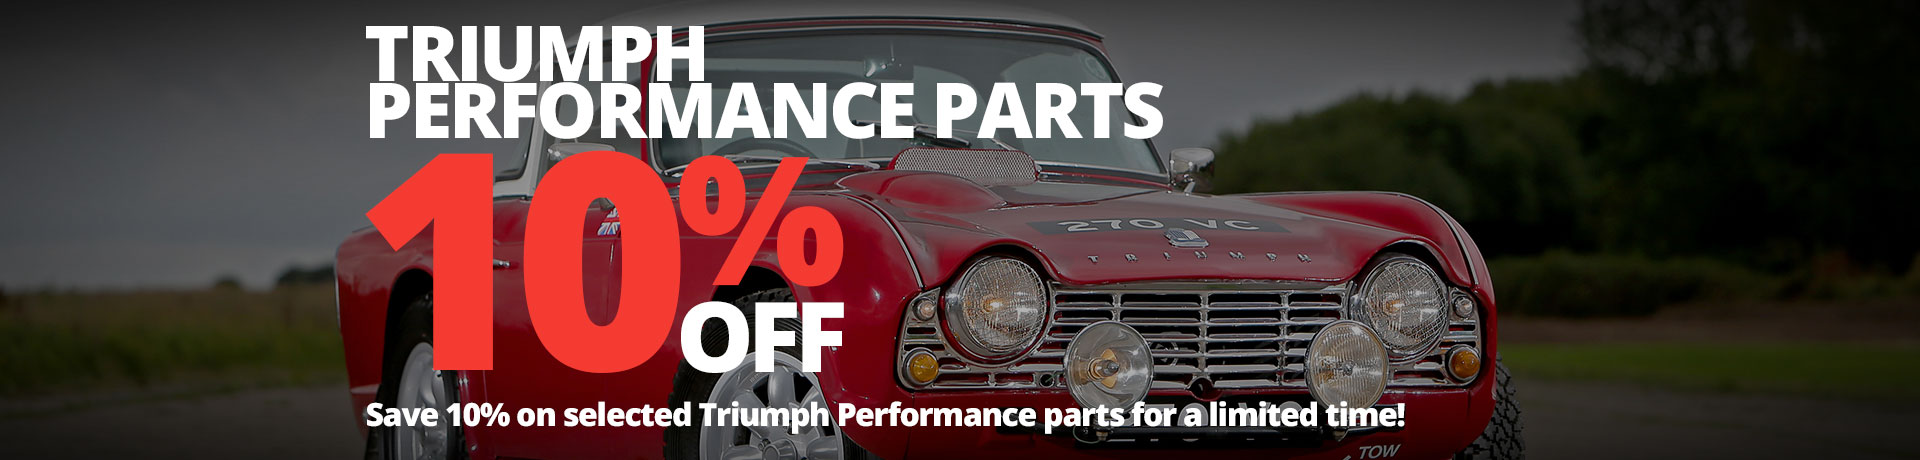 10% off Triumph Performance Parts